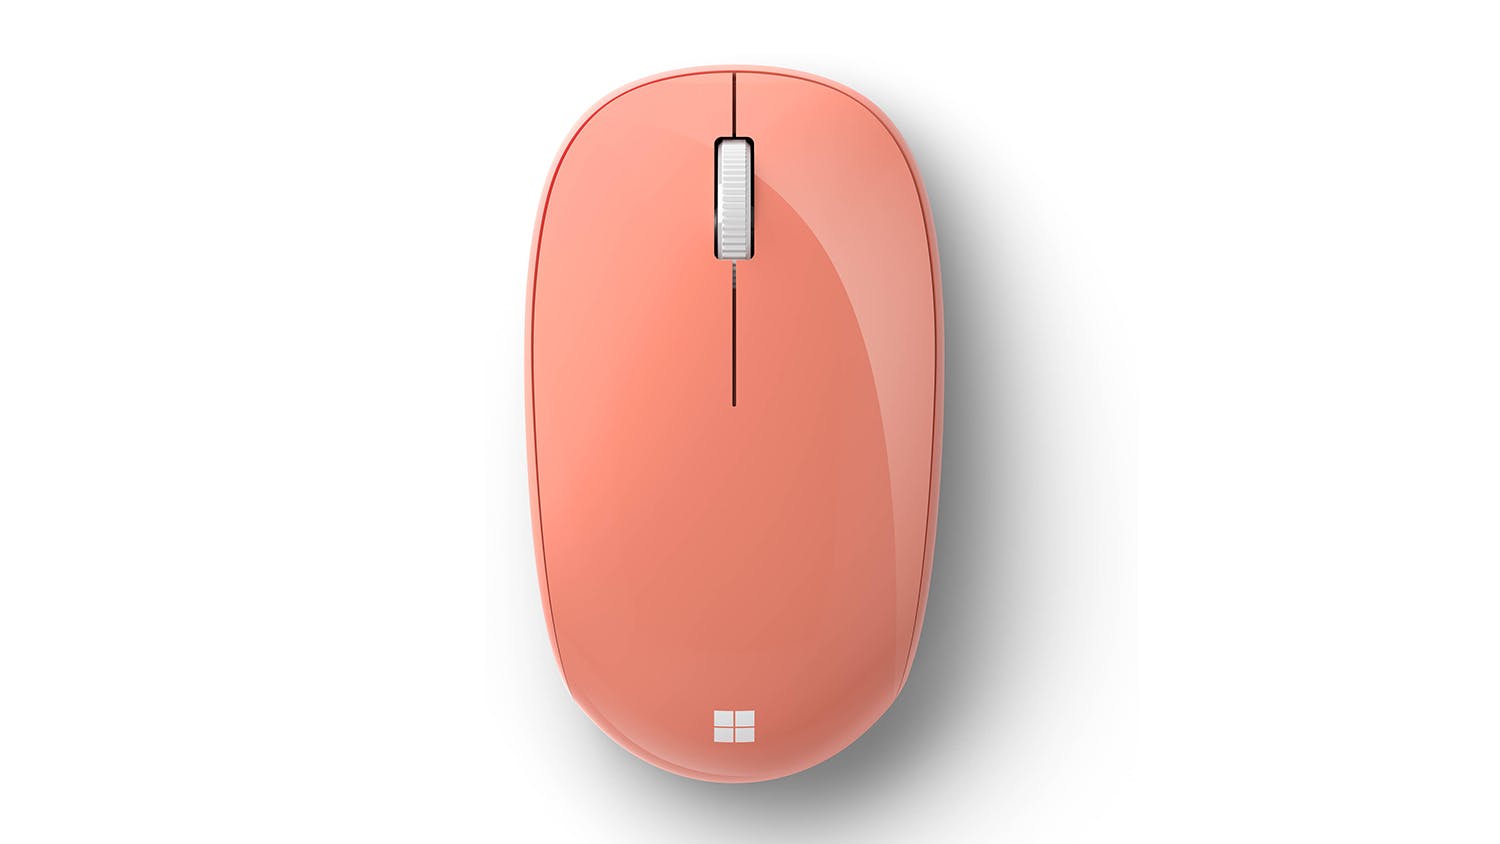 Chuột không dây Microsoft Bluetooth Mouse RJN-00041 có thiết kế đơn giản và đẹp